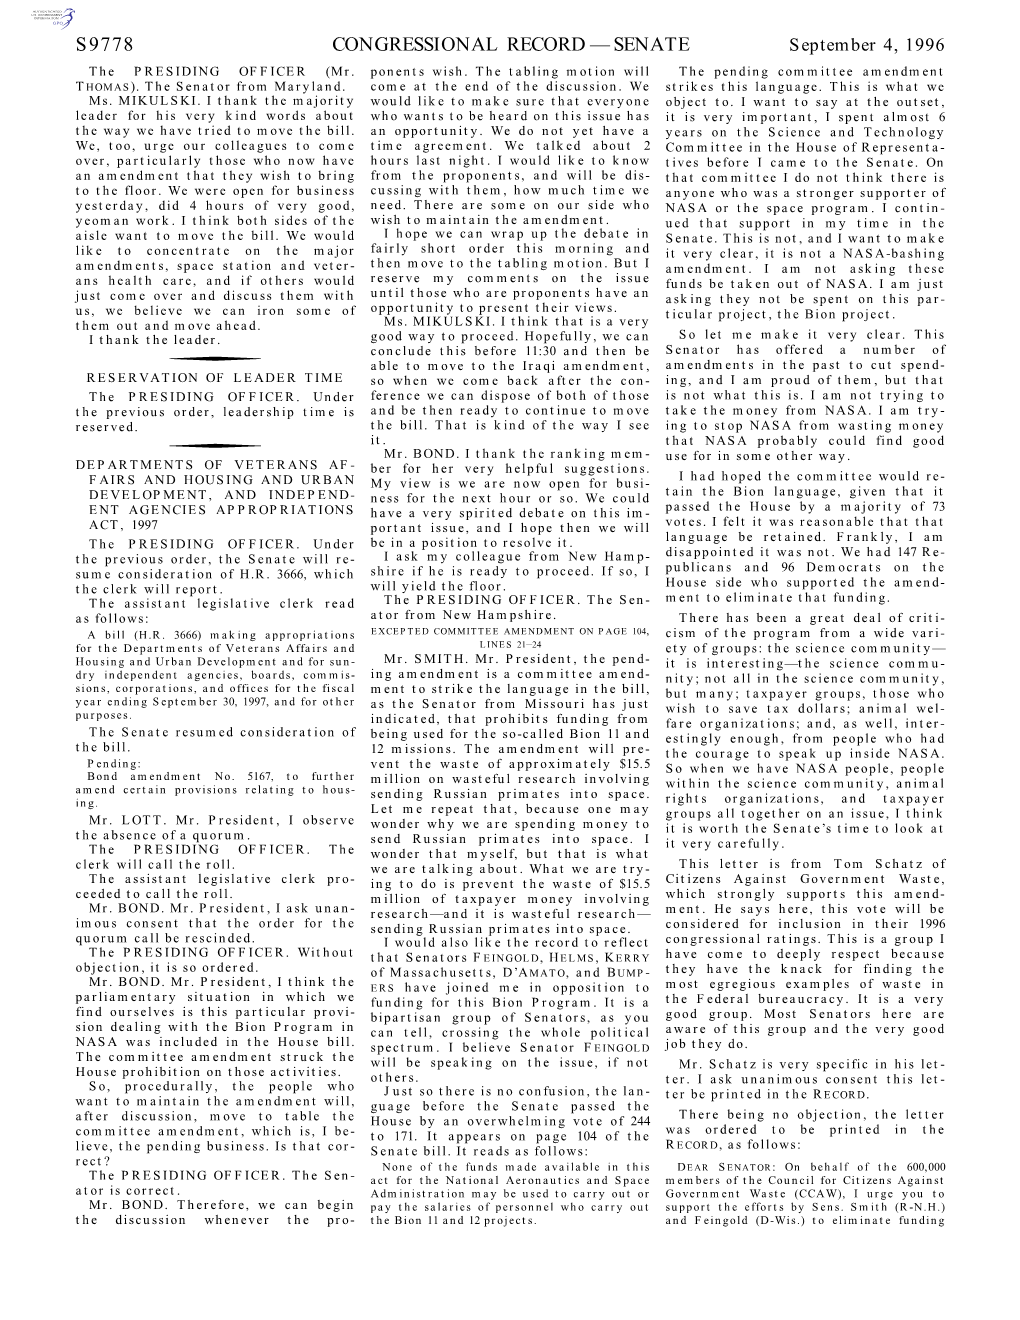 Congressional Record—Senate S9778